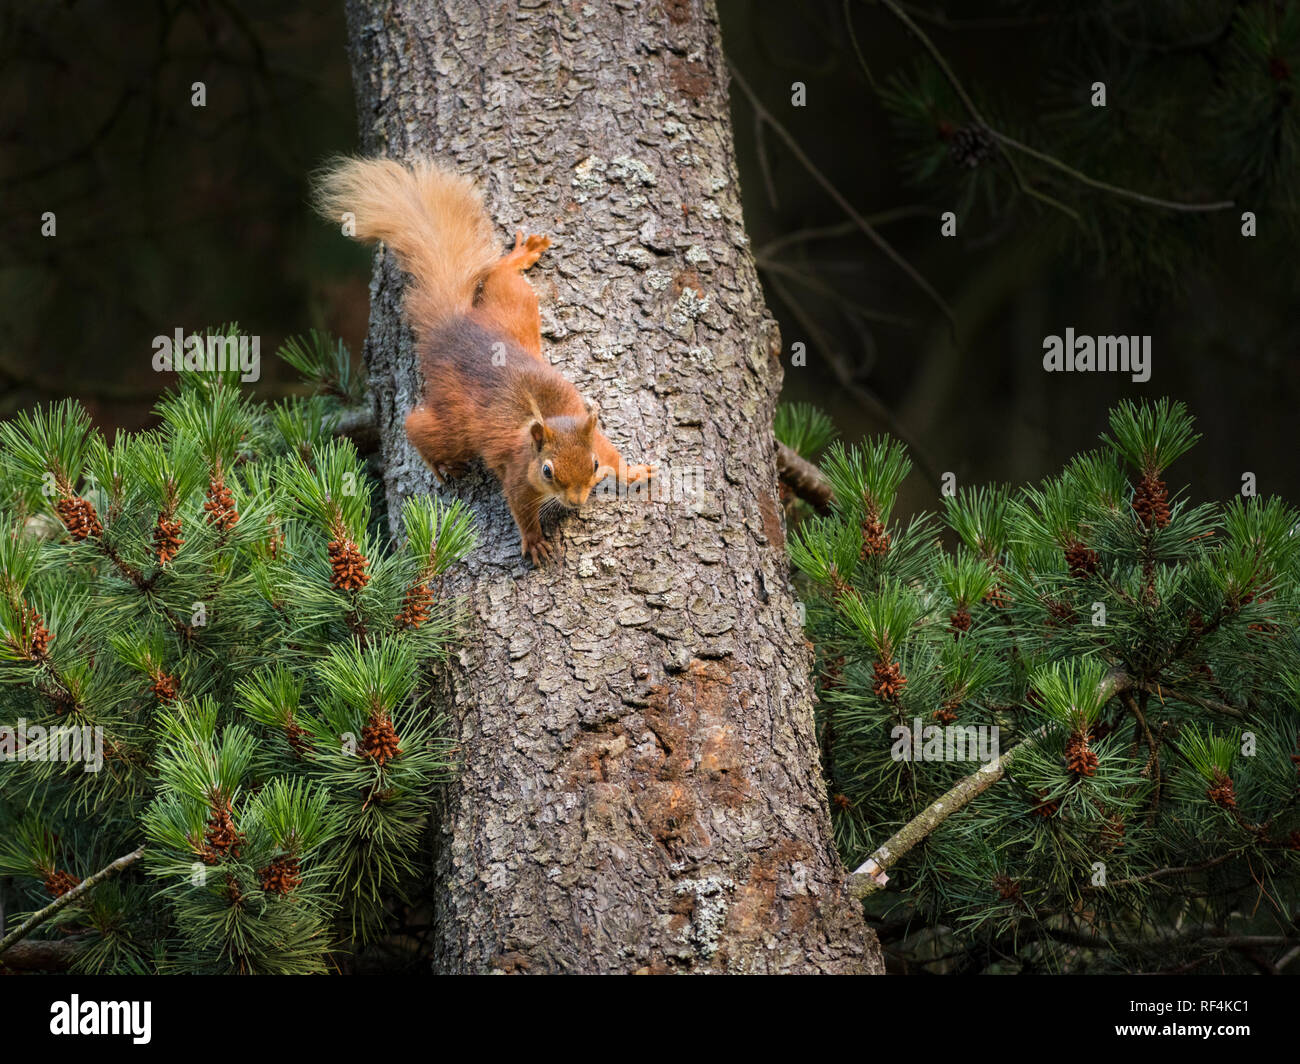 Gefährdete rote Eichhörnchen jagte auf einen Baum von einem anderen Eichhörnchen, stoppt dann und hängt mit der Oberseite nach unten beobachten Stockfoto